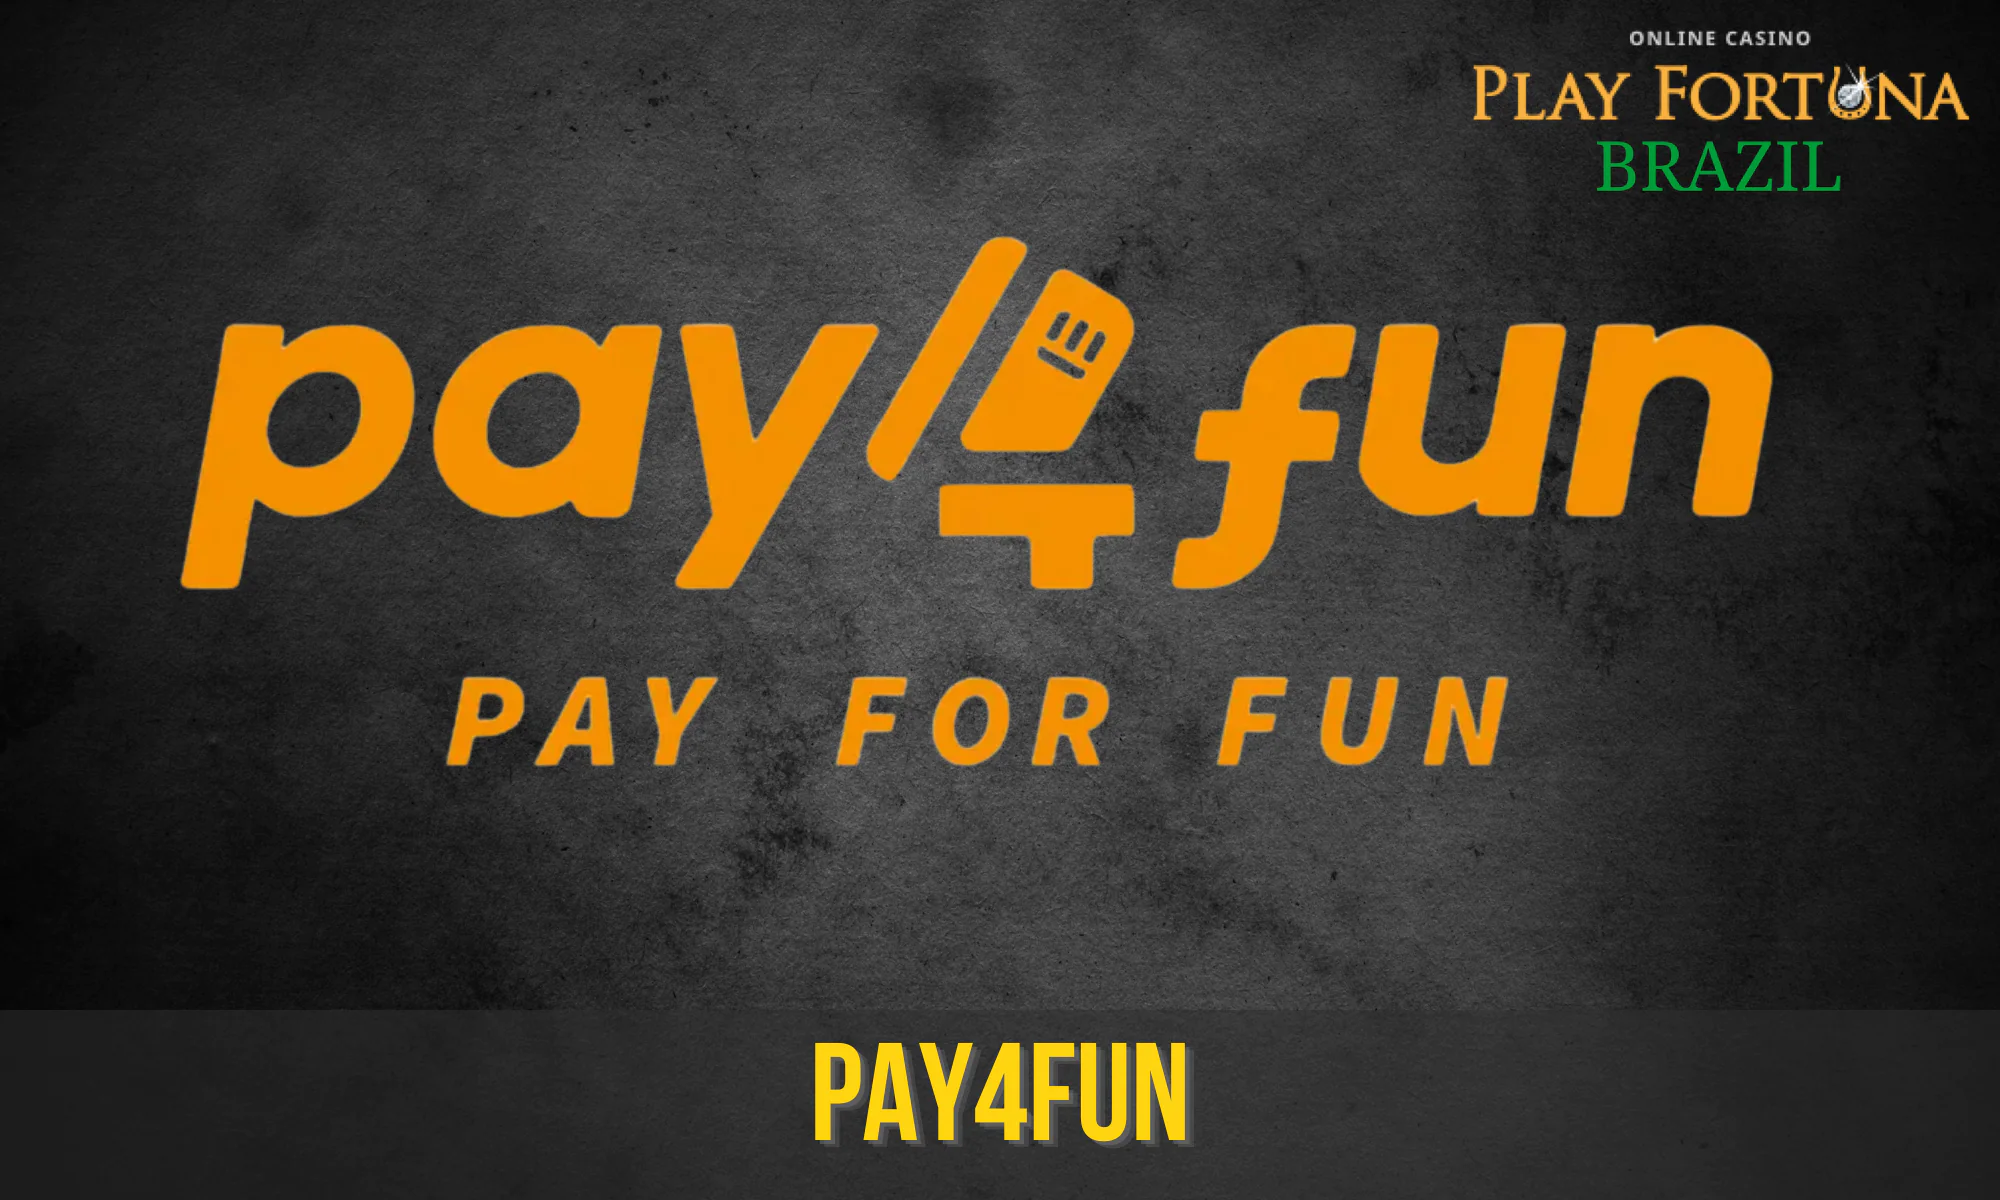 O Pay4Fun é uma carteira digital que permite aos brasileiros depositar ou sacar fundos no Play Fortuna